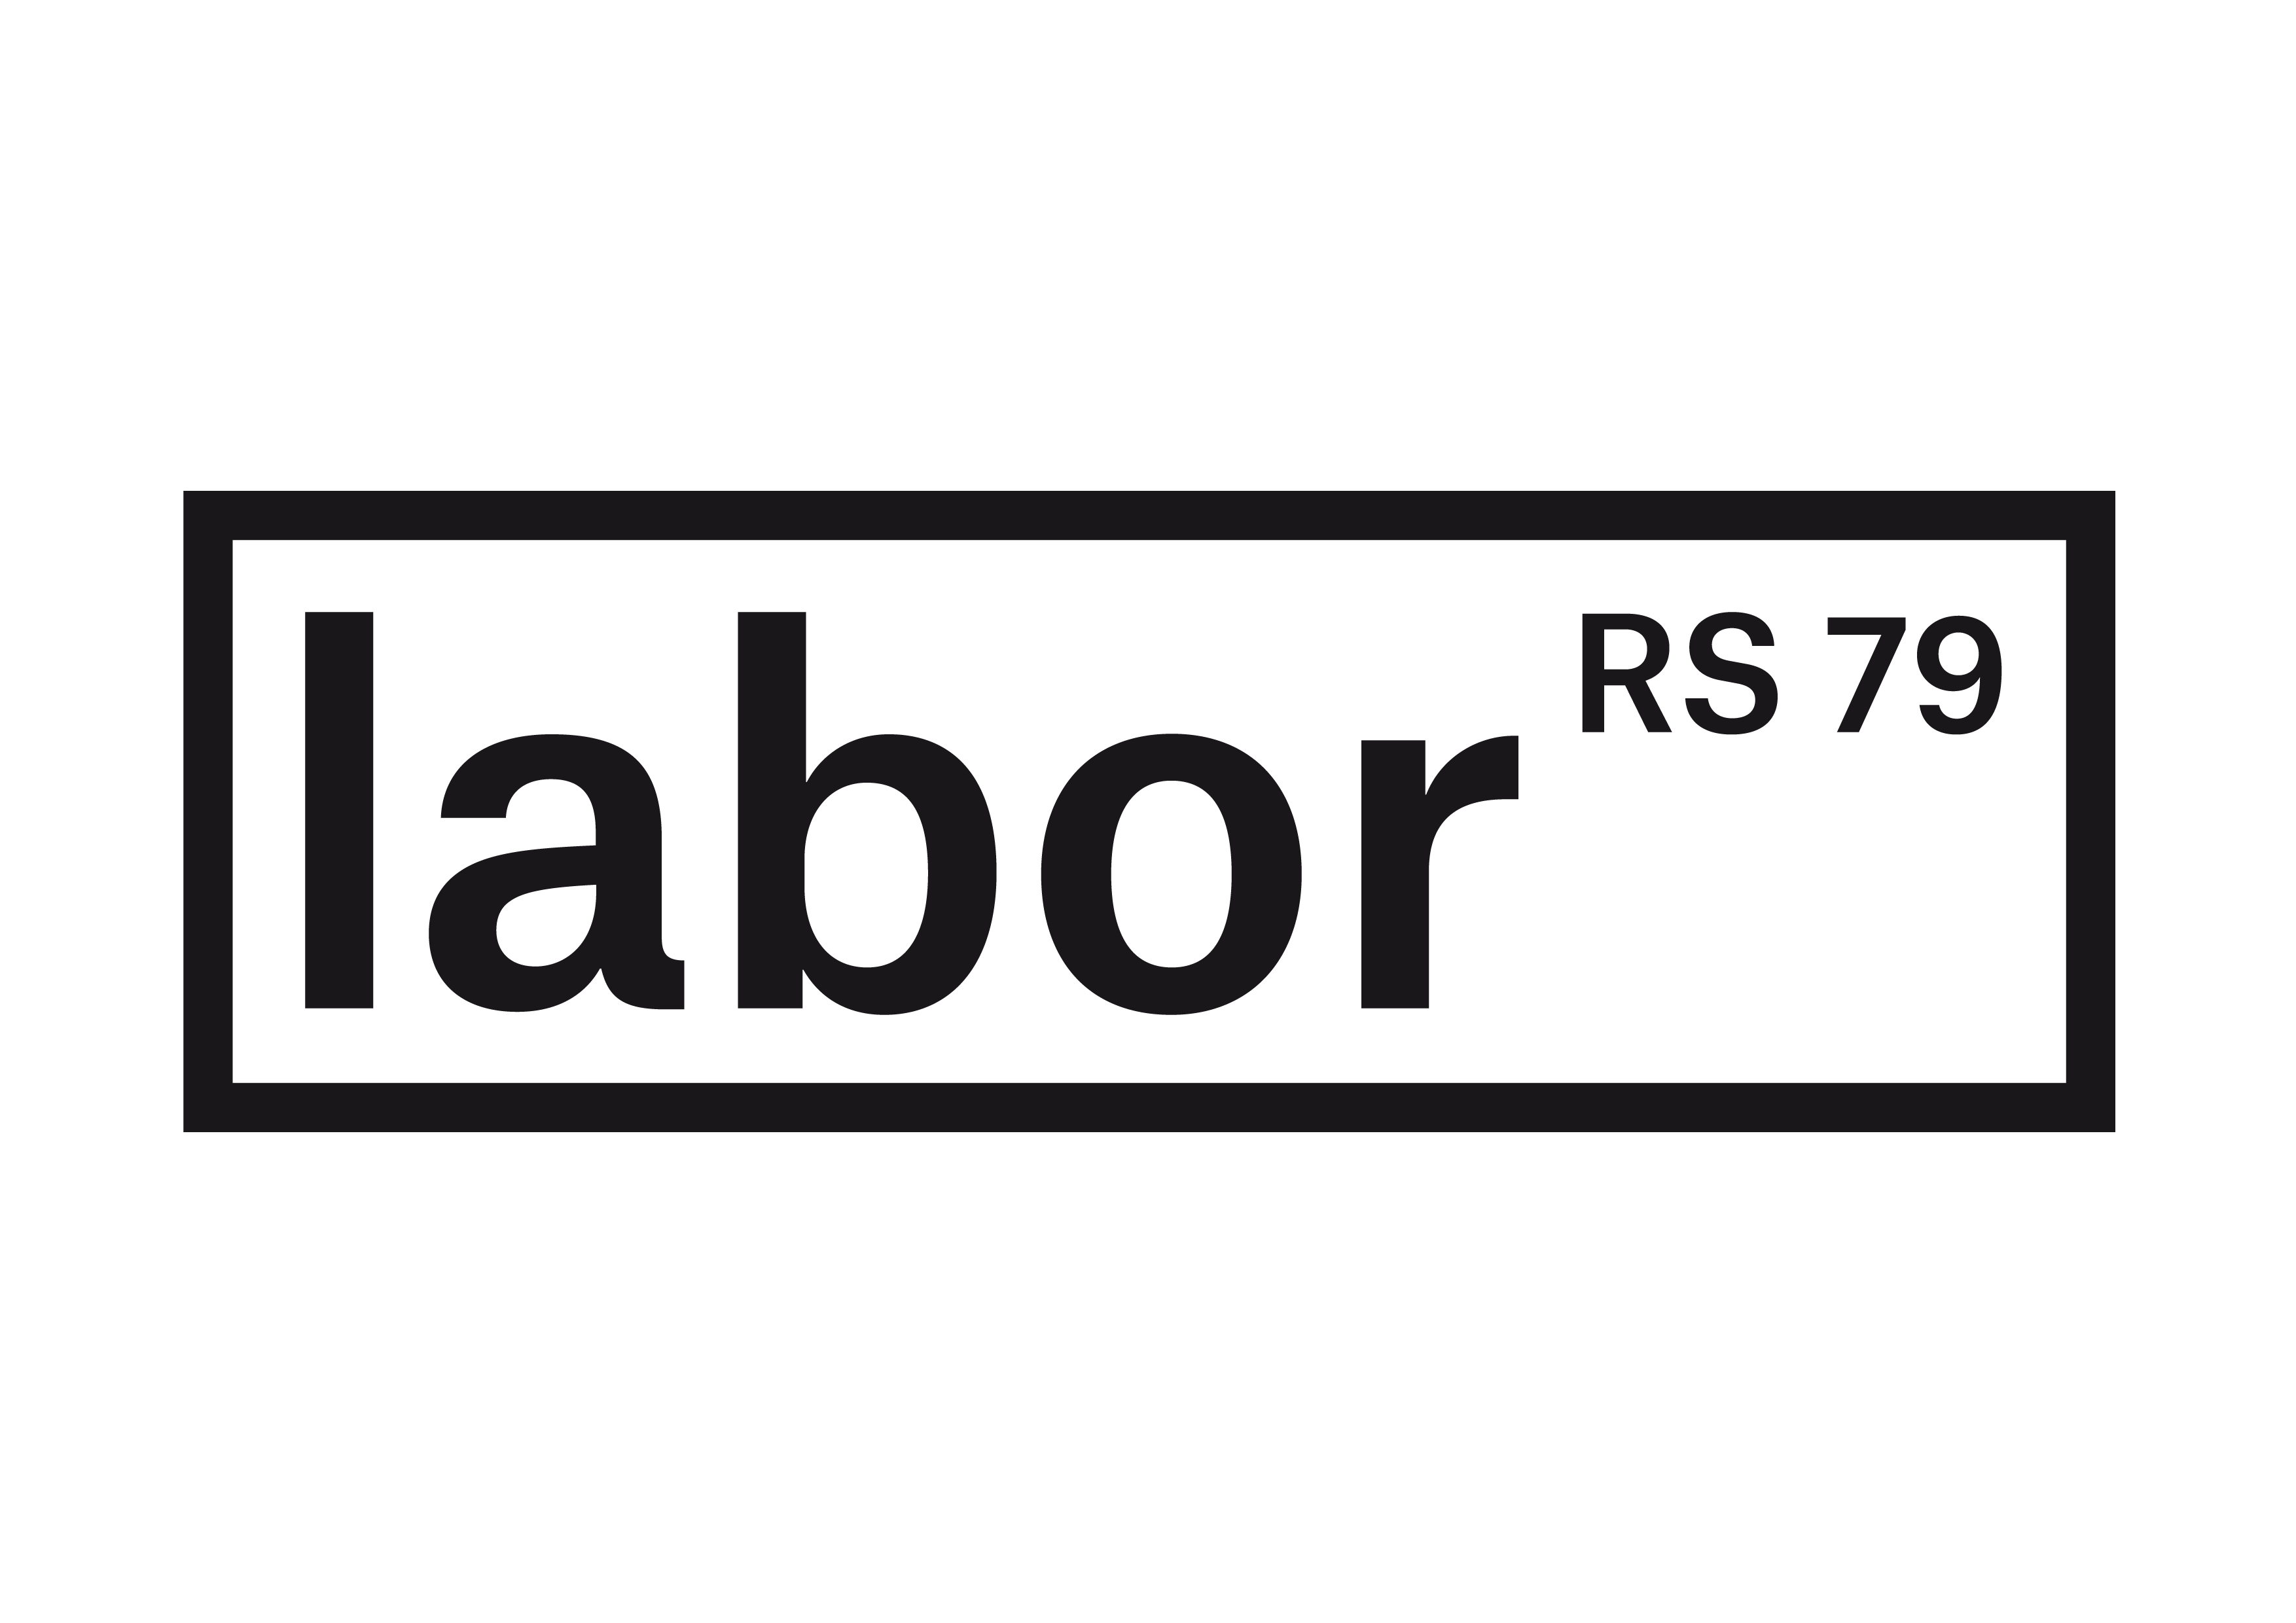 Logo Labor RS 79